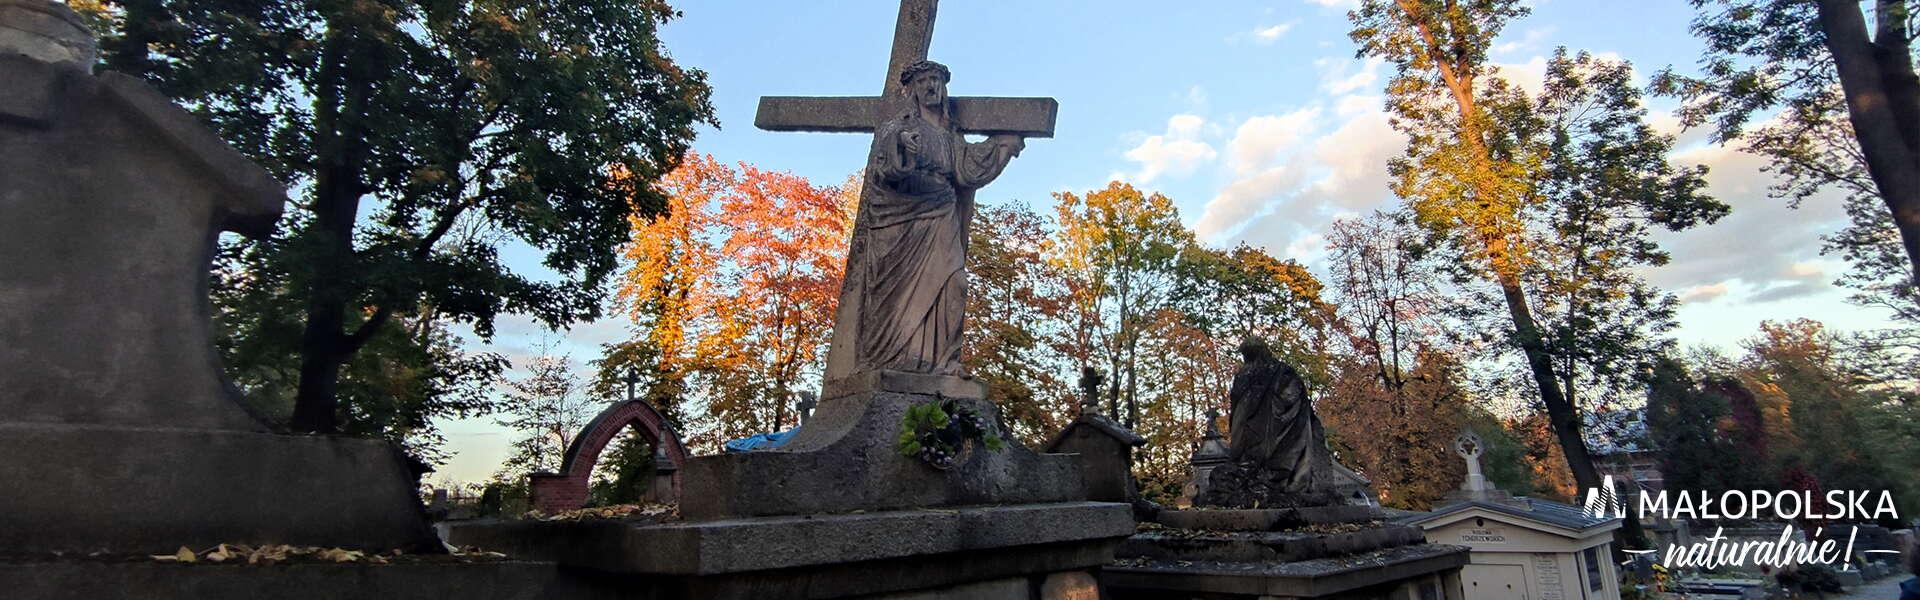 Cmentarz, na pierwszym planie rzeźba nagrobna - figura Chrystusa dżwigającego krzyż. W prawym dolnym rogu logo - napis Małopolska naturalnie